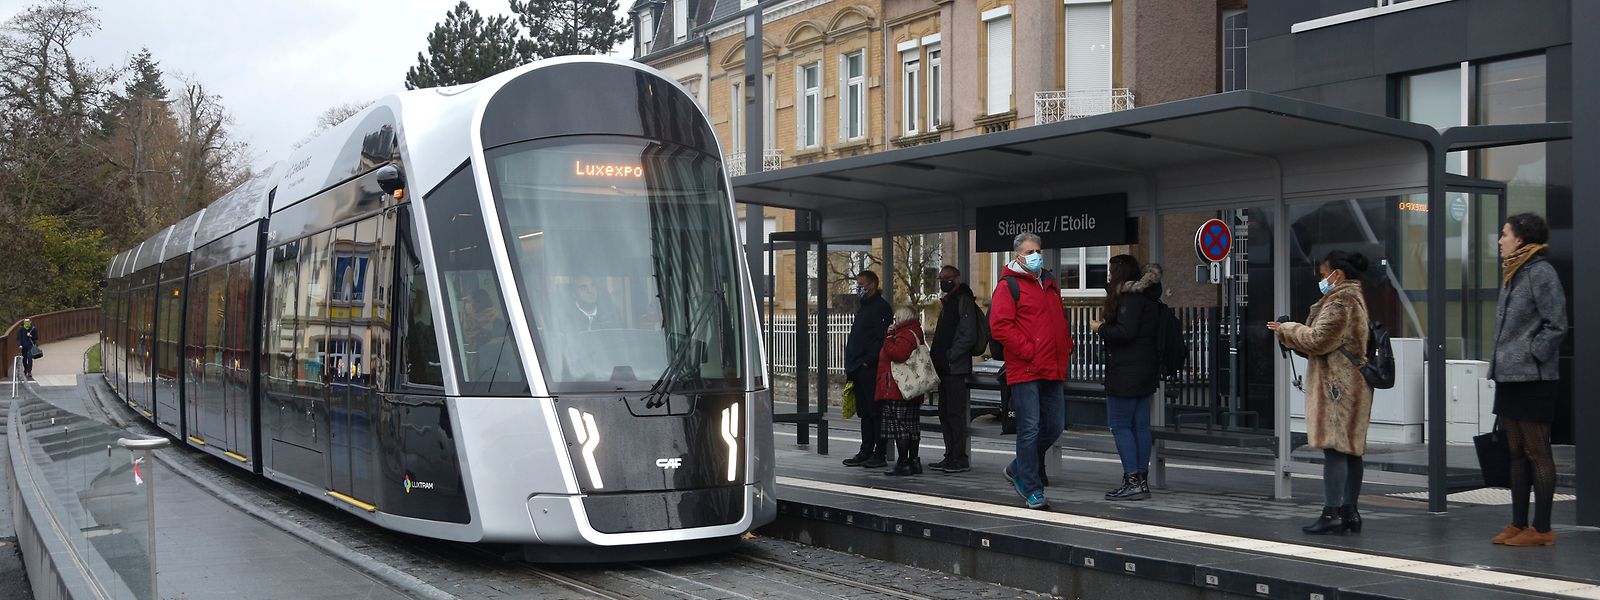 Si la Ville de Luxembourg envisage un tracé souterrain, le ministère des Transports juge en revanche le projet trop compliqué et coûteux.